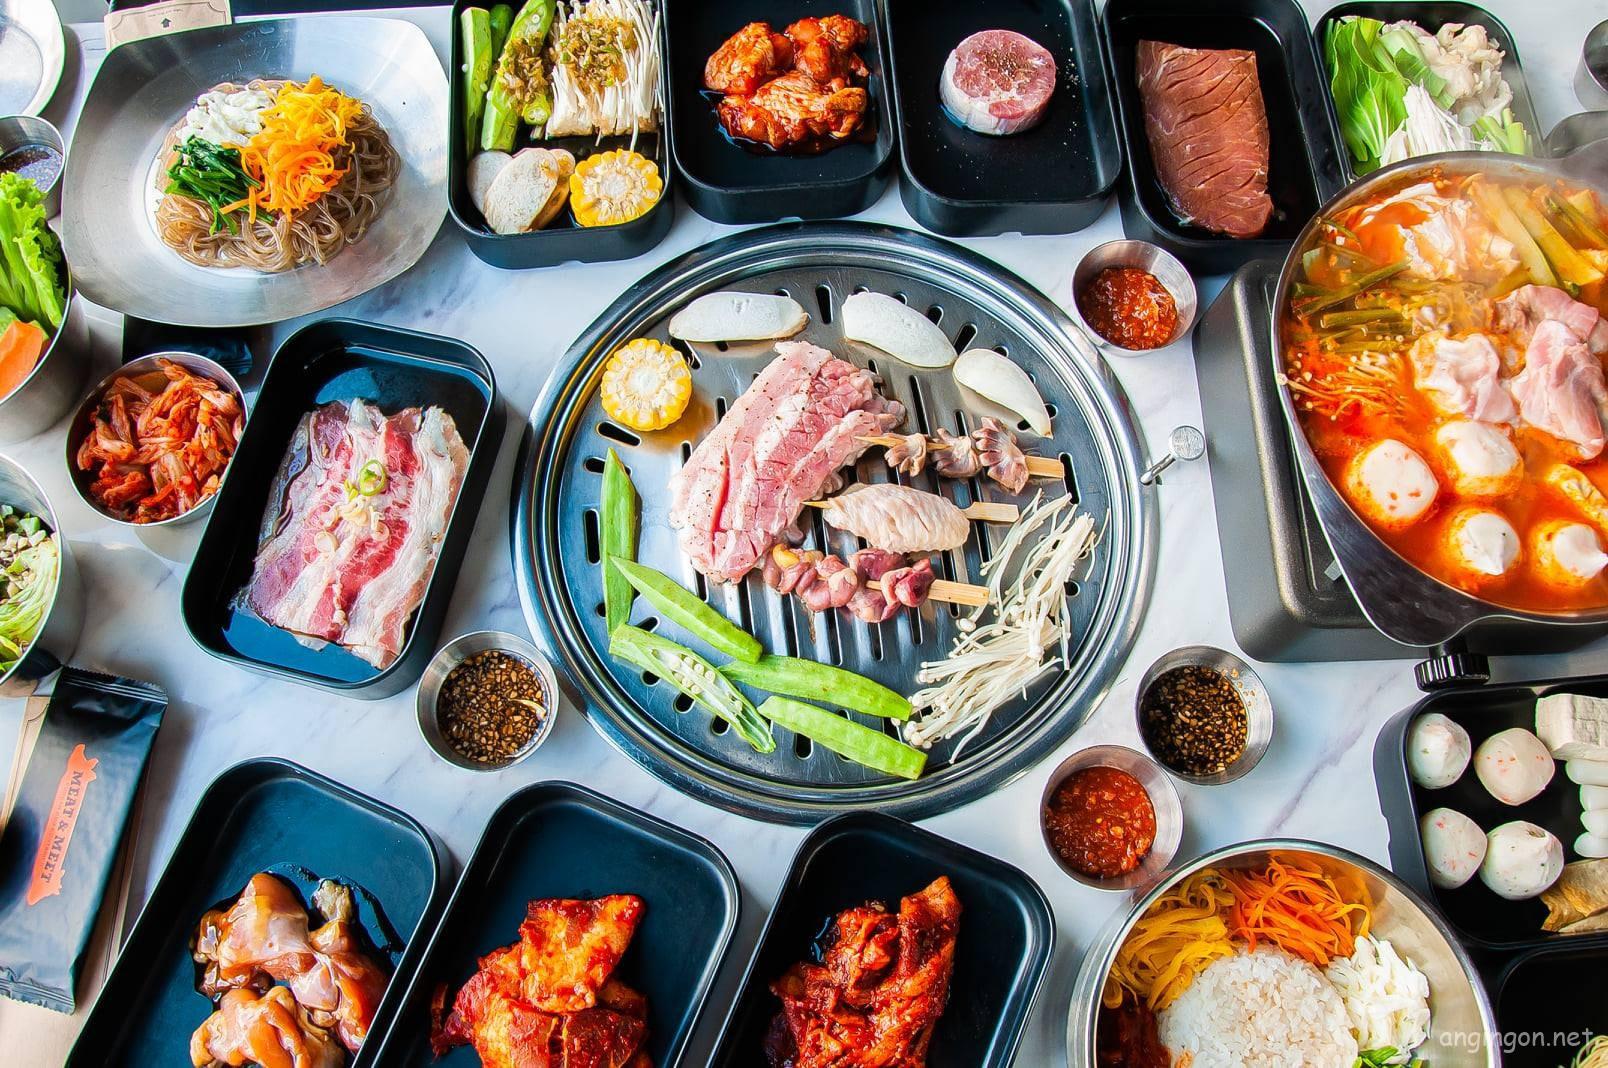 List 10+ Quán ăn Hàn Quốc quận 1 được dân Hàn khen ‘gút chóp’ – Angingon